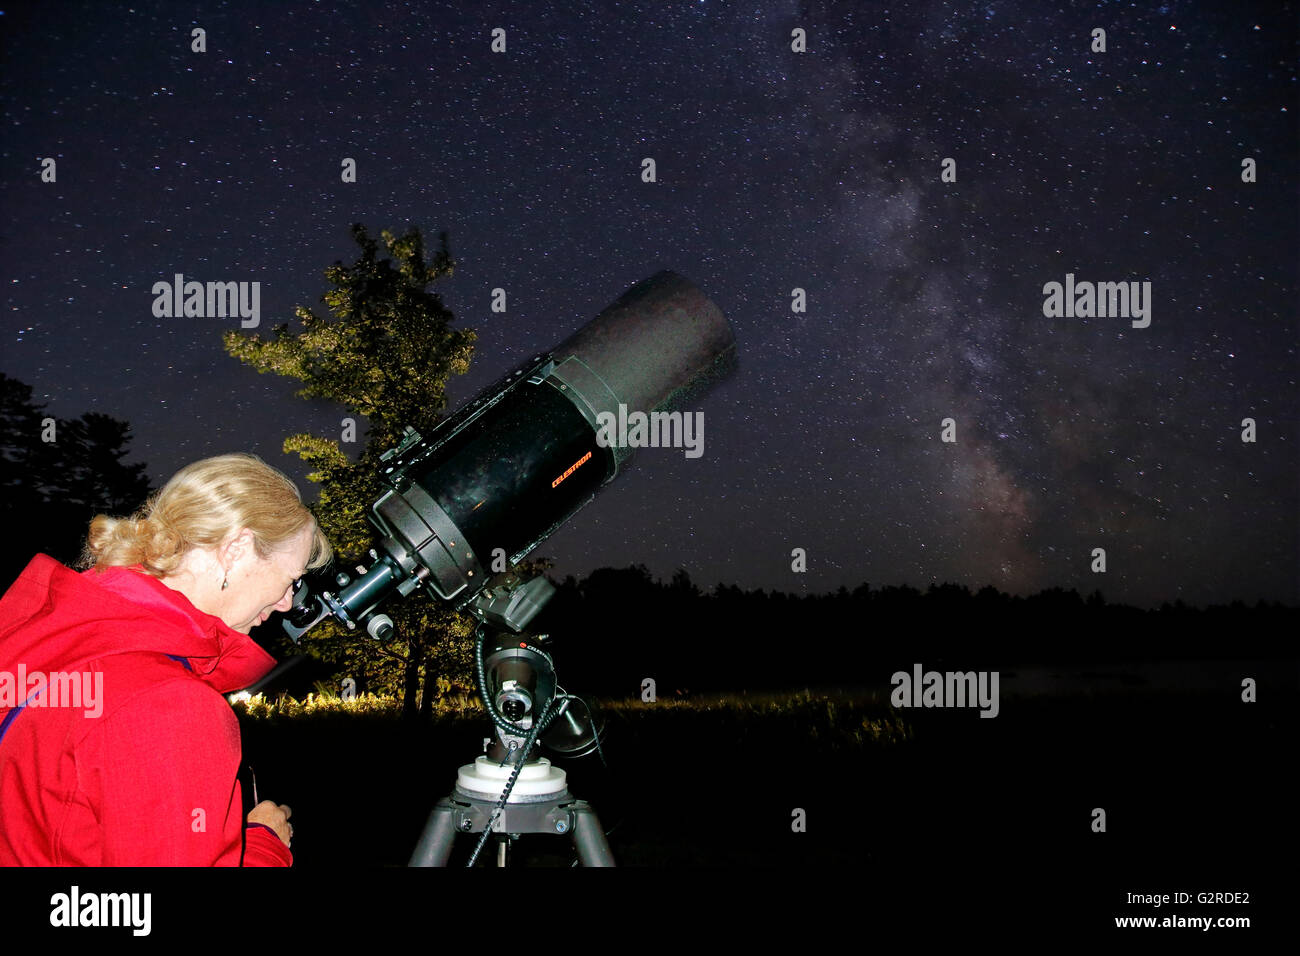 Une femme regardant les étoiles et les planètes à travers un télescope Banque D'Images